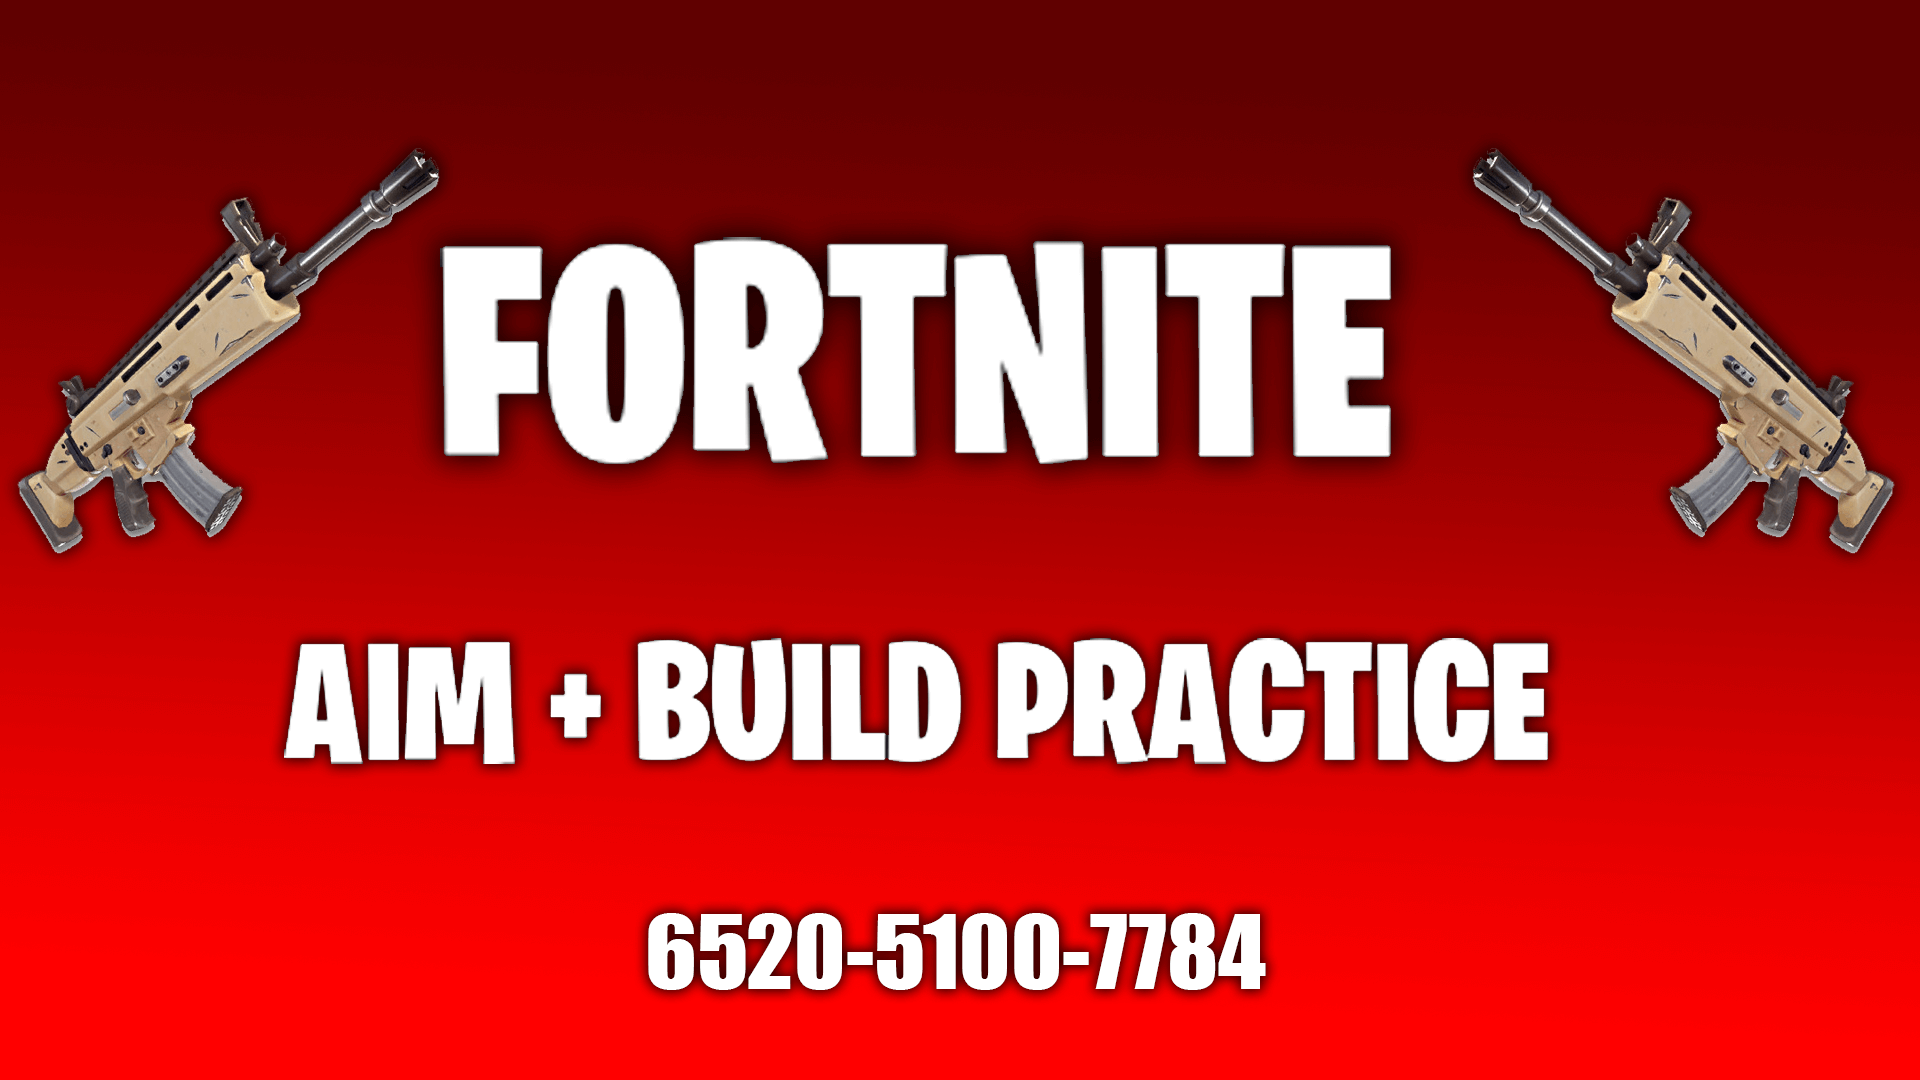 FORTNITE AIM + BUILD PRACTICE